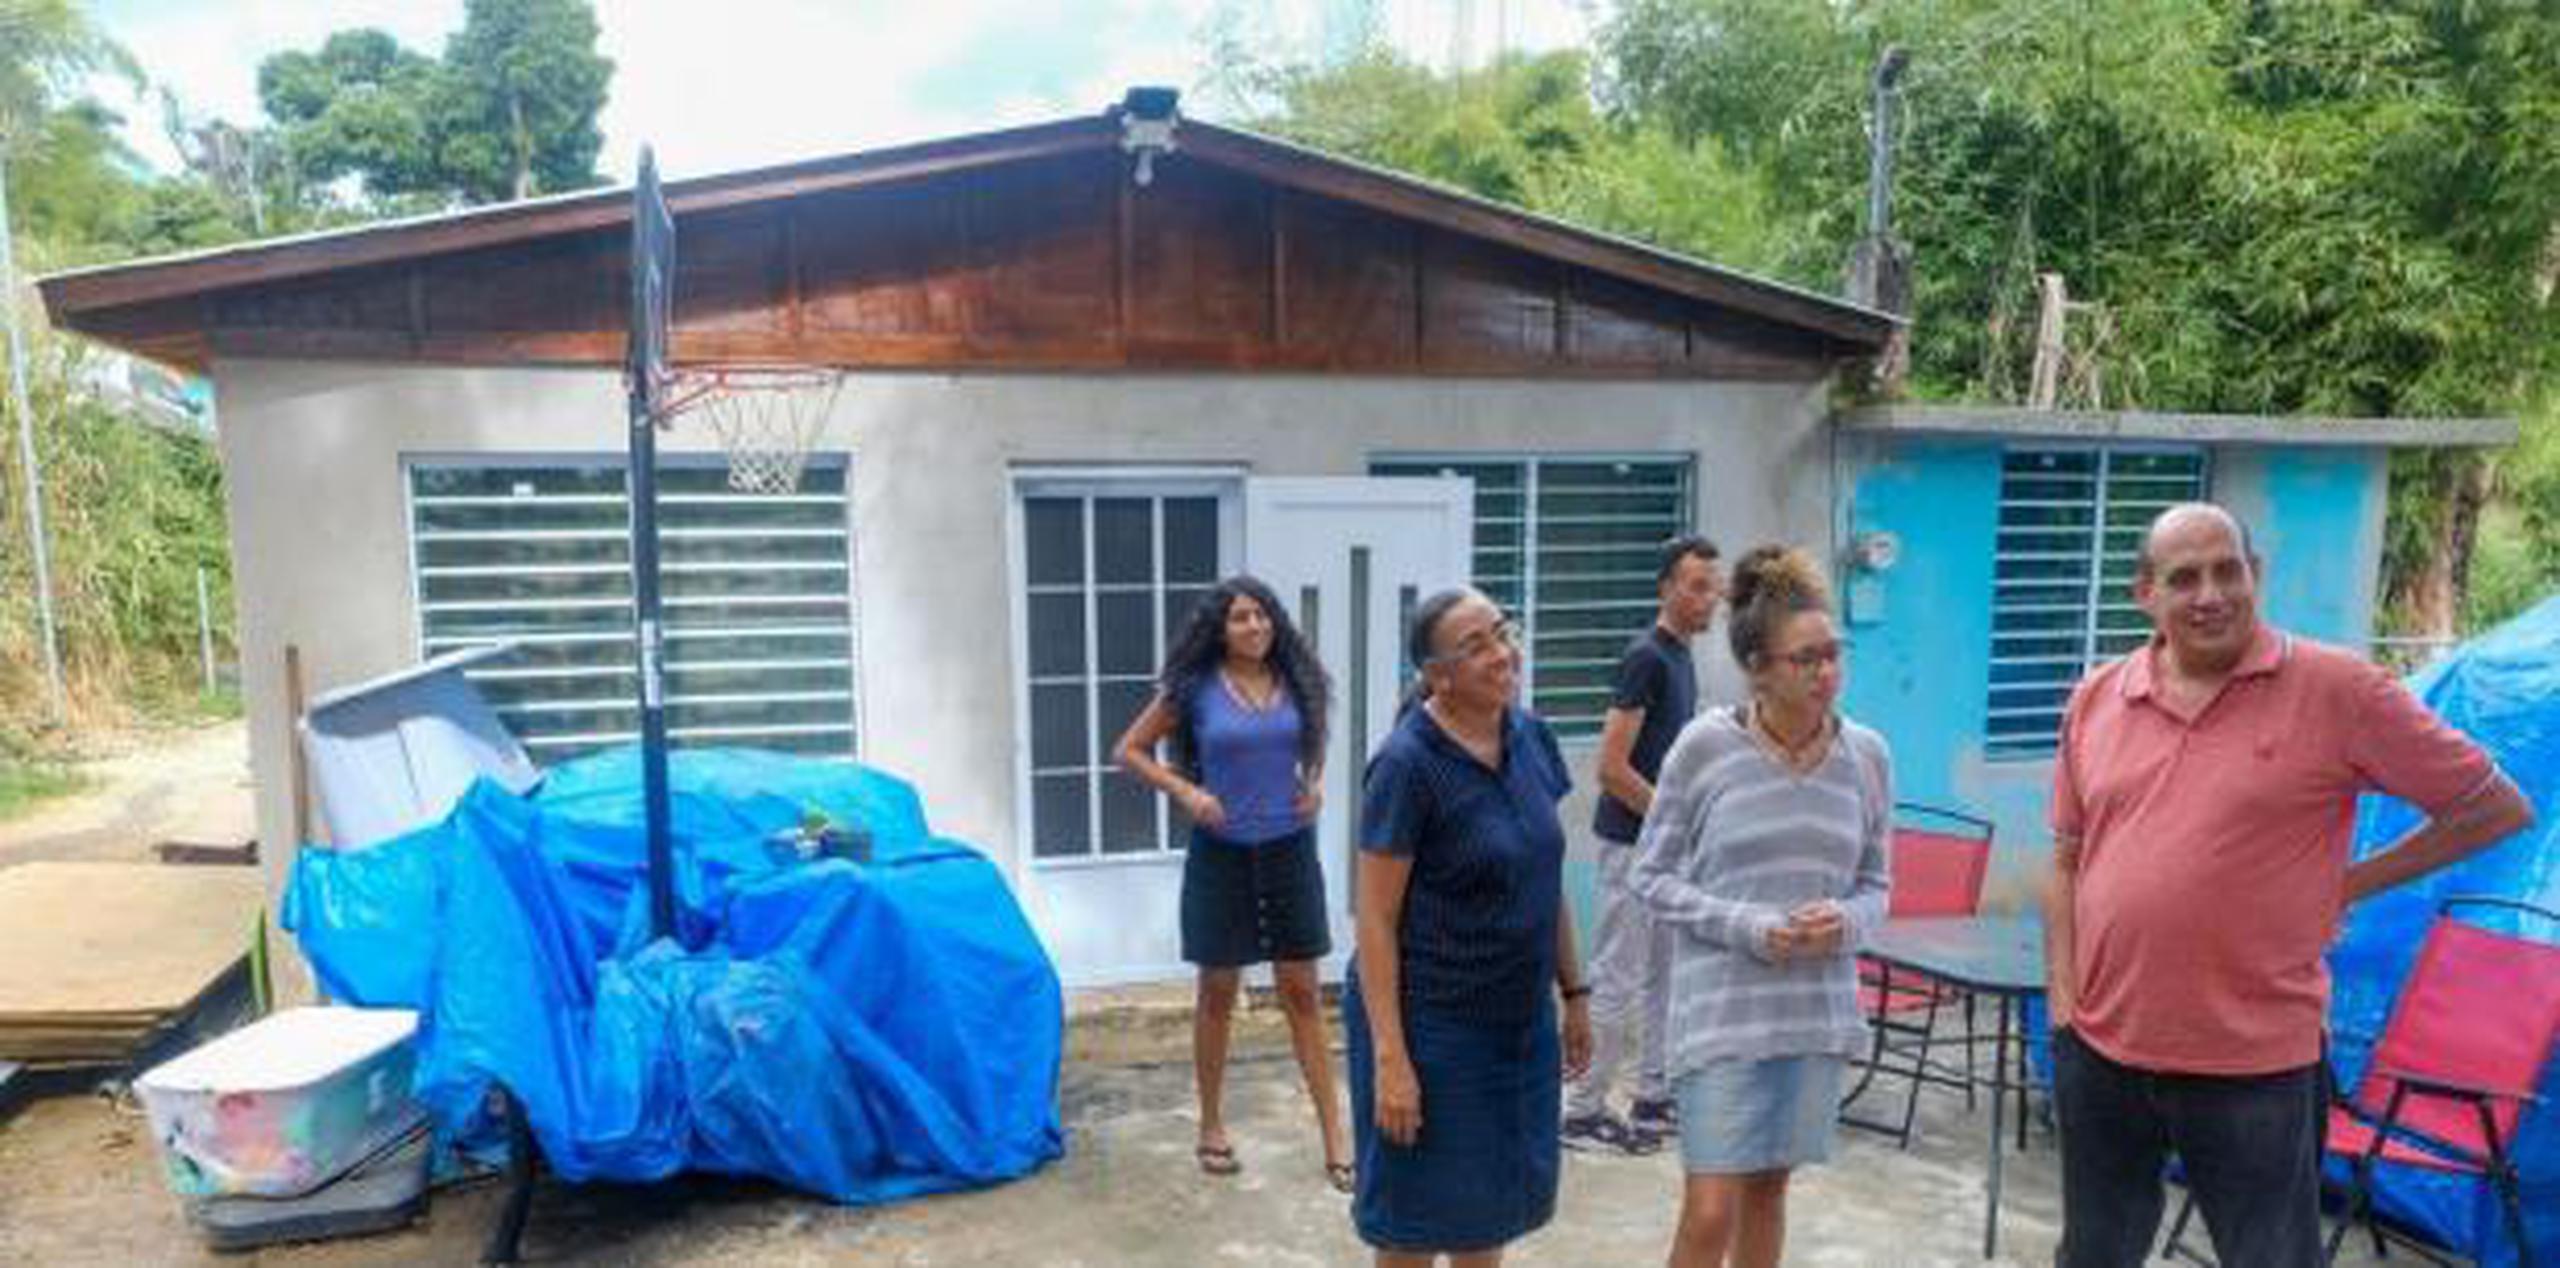 Atrás quedan los interminables días del refugio en el Centro Comunal, en el sector La Hormiga, a donde la familia llegó para guarecerse la noche del temporal. (gerald.lopez@gfrmedia.com)